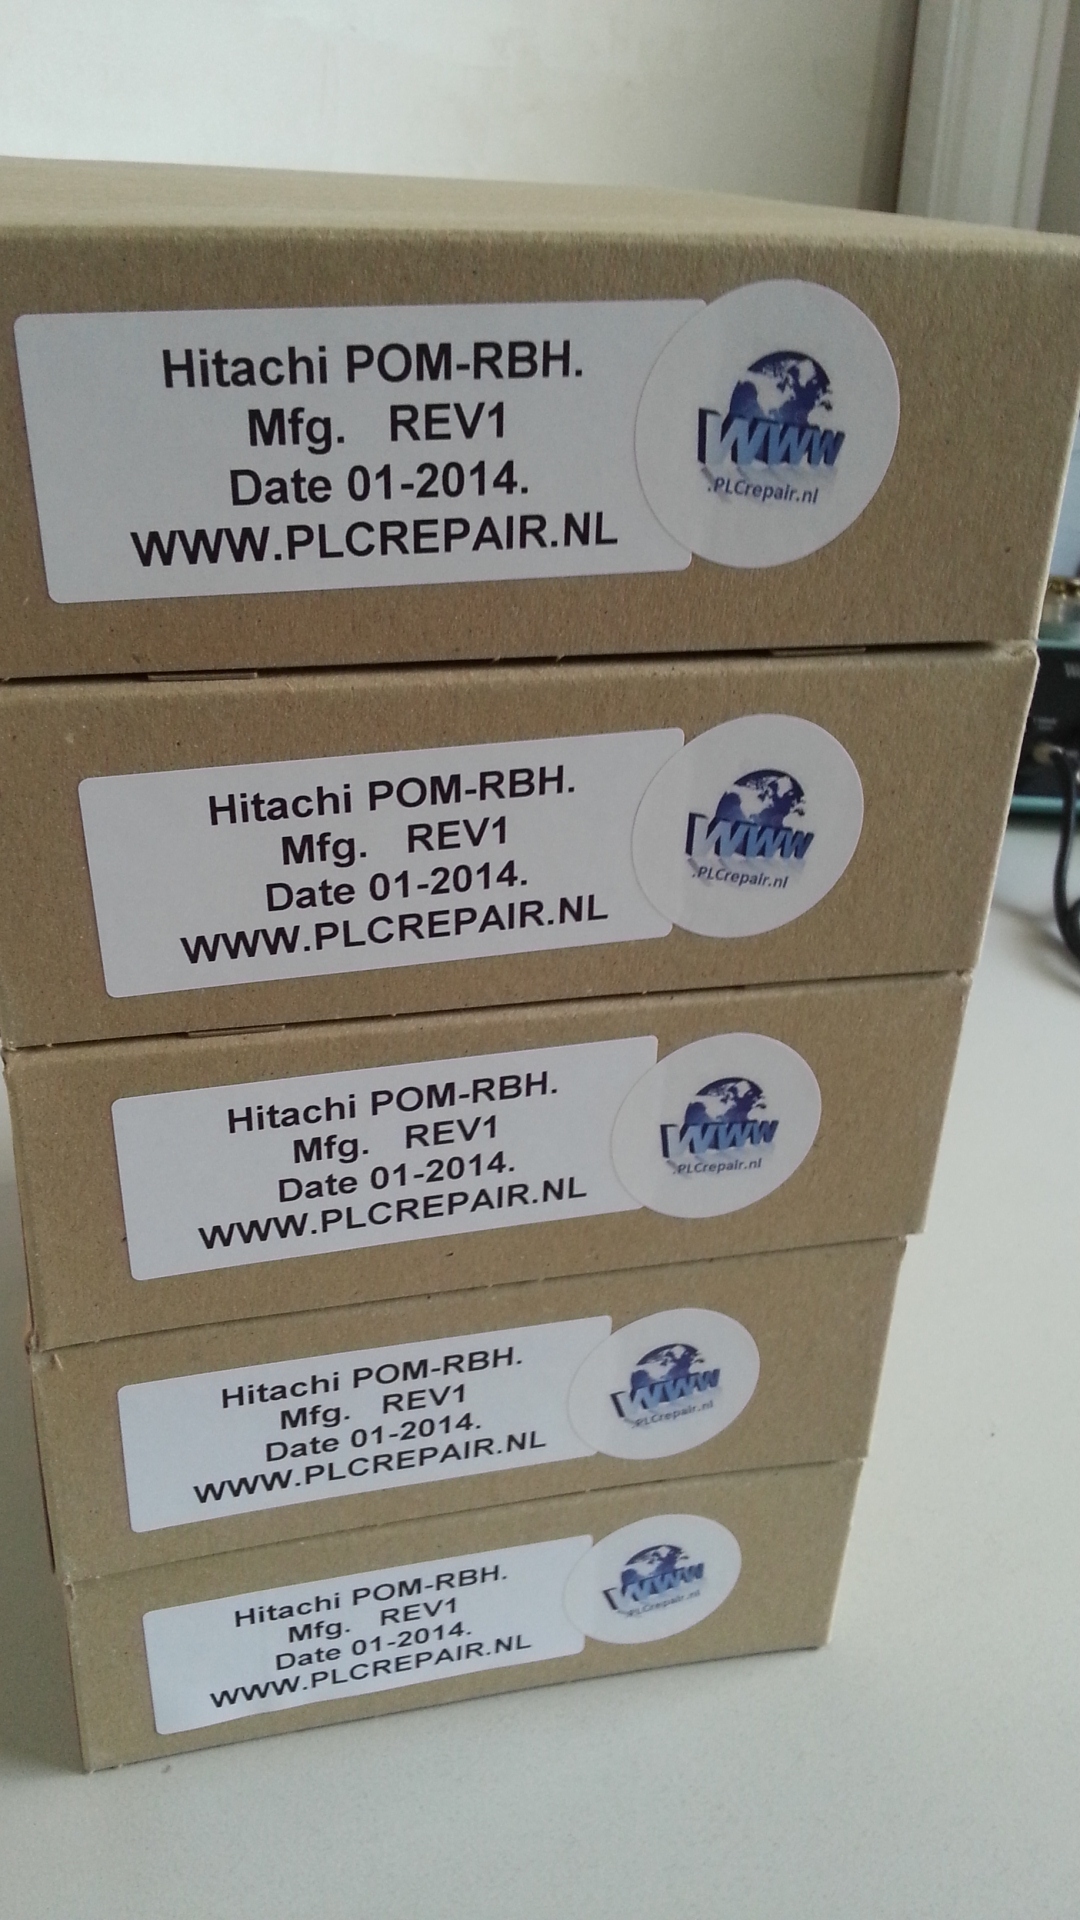 POM-RBH Hitachi plc